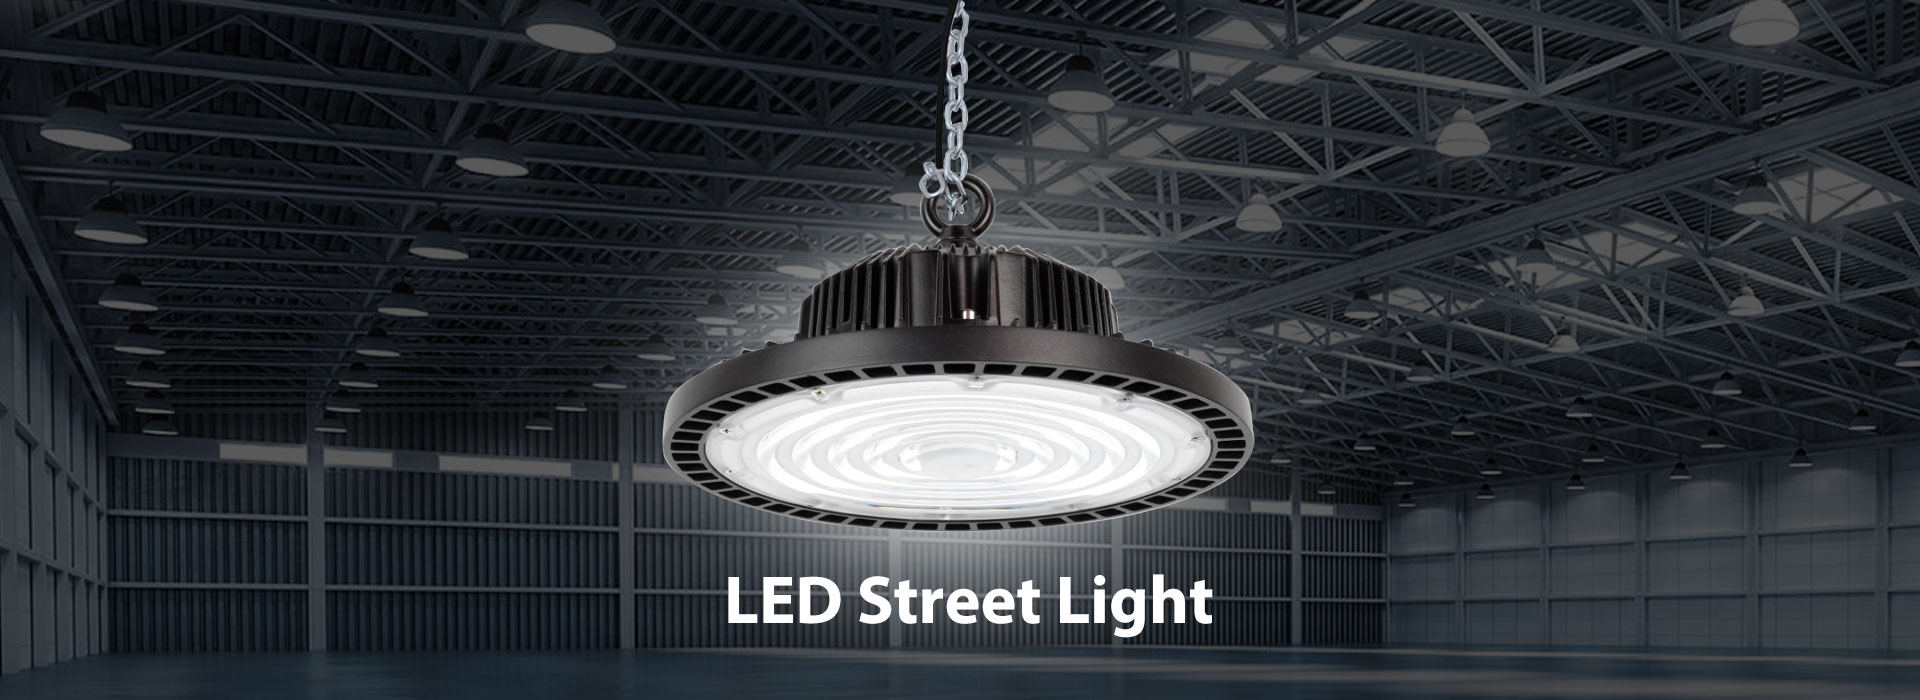 တရုတ် LED Street Light စက်ရုံ